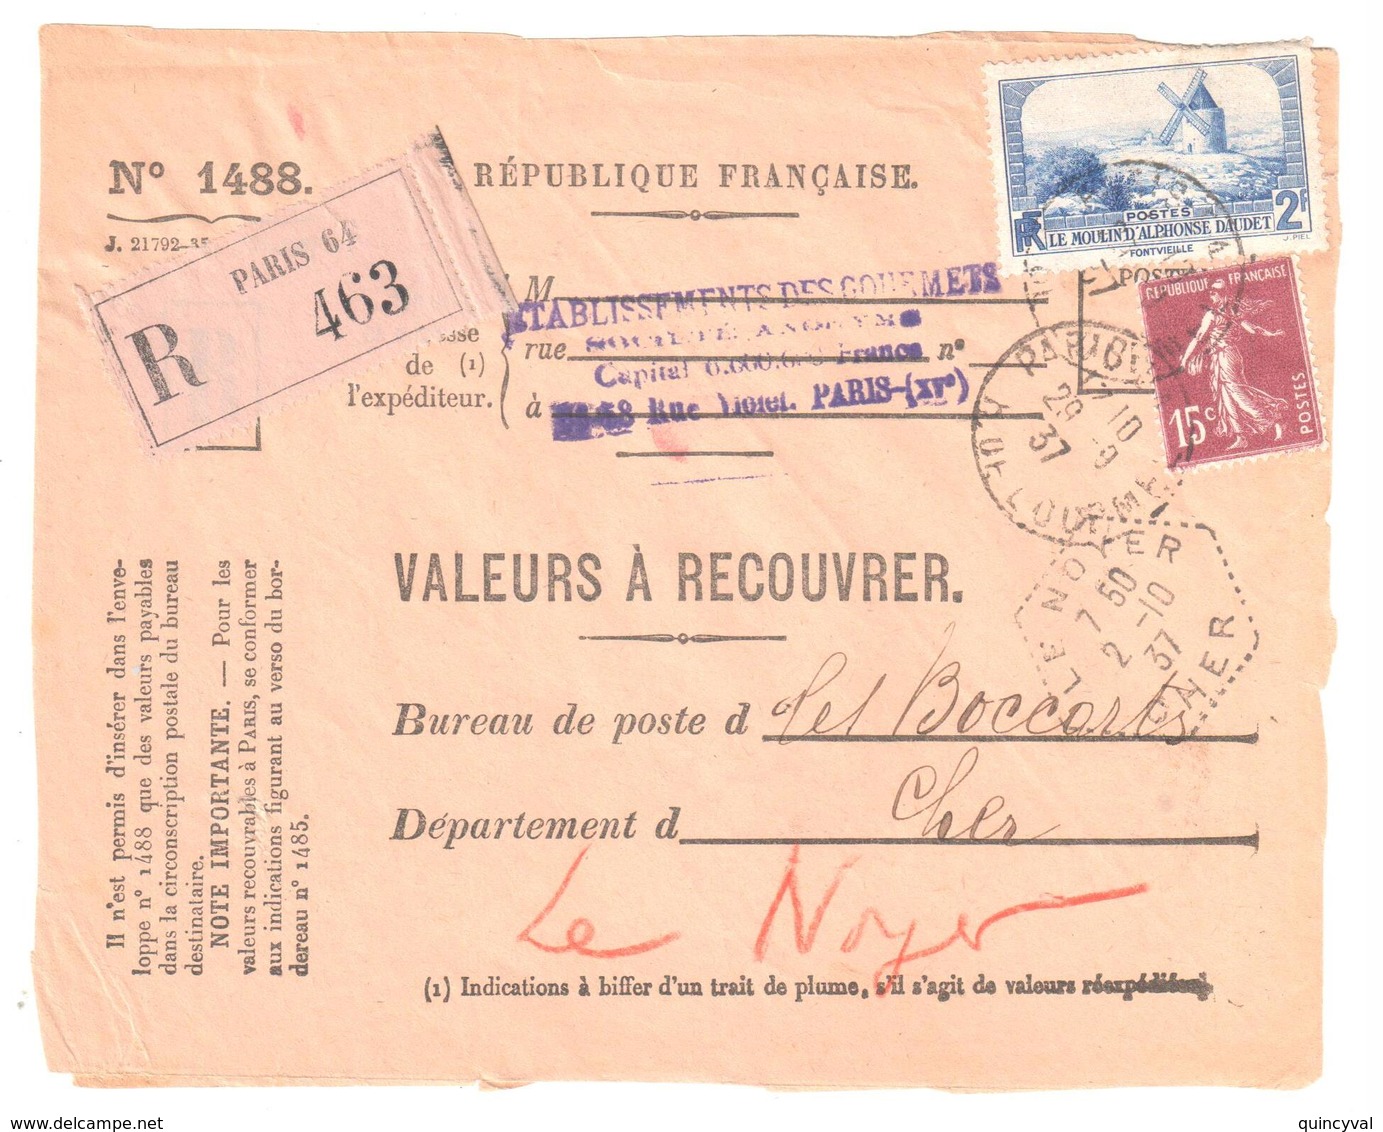 PARIS 64 Valeur à Recouvrer N° 1488 Daudet Semeuse 15 C Yv 311 189 Ob 1937 Dest Le Noyer Cher Hexagone Pointillé F4 - Storia Postale